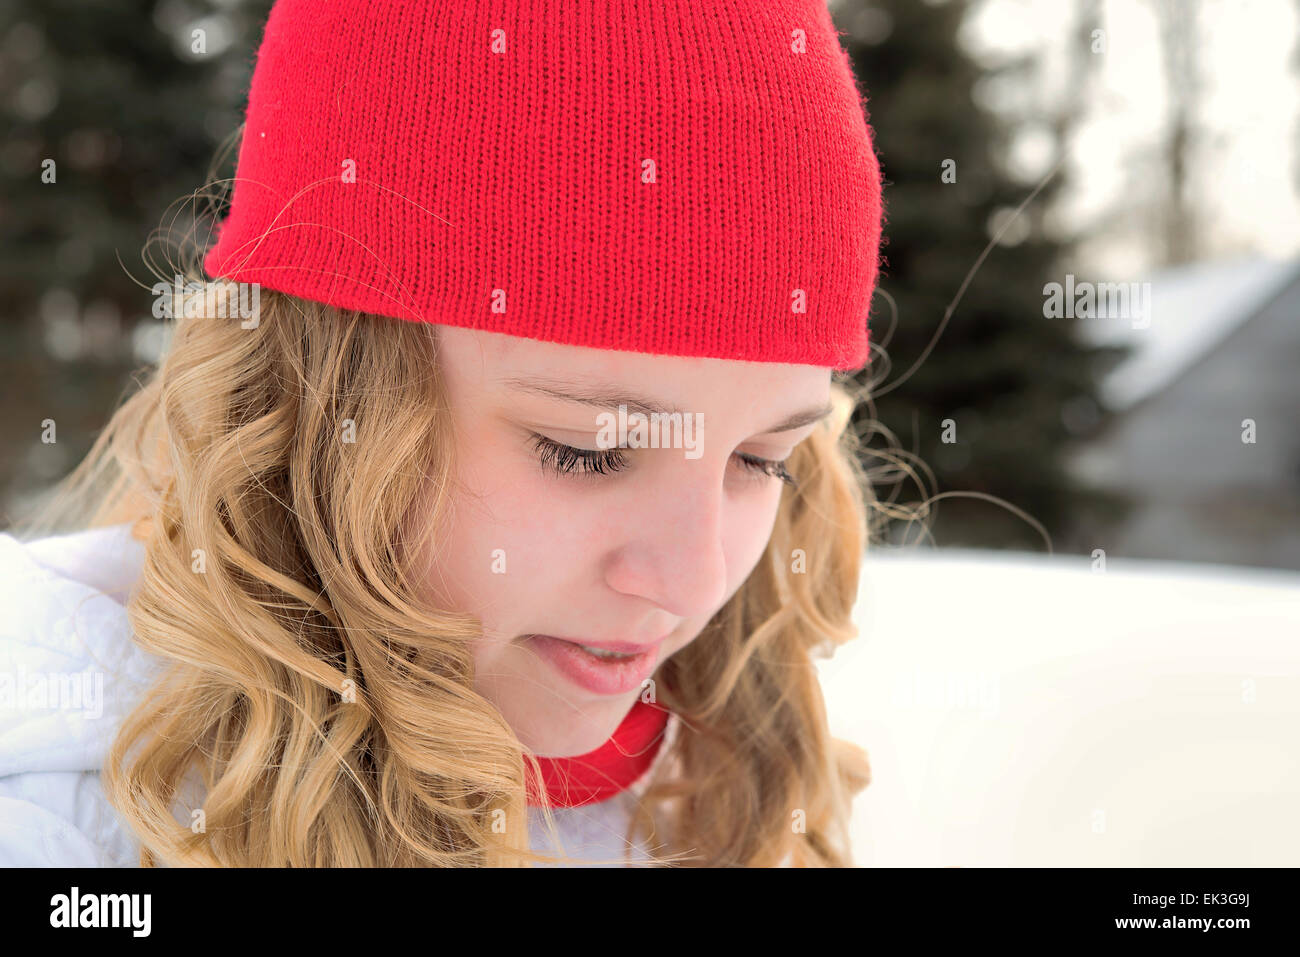 Caucasian ragazza adolescente che indossa un inverno rosso cappuccio all'aperto Foto Stock